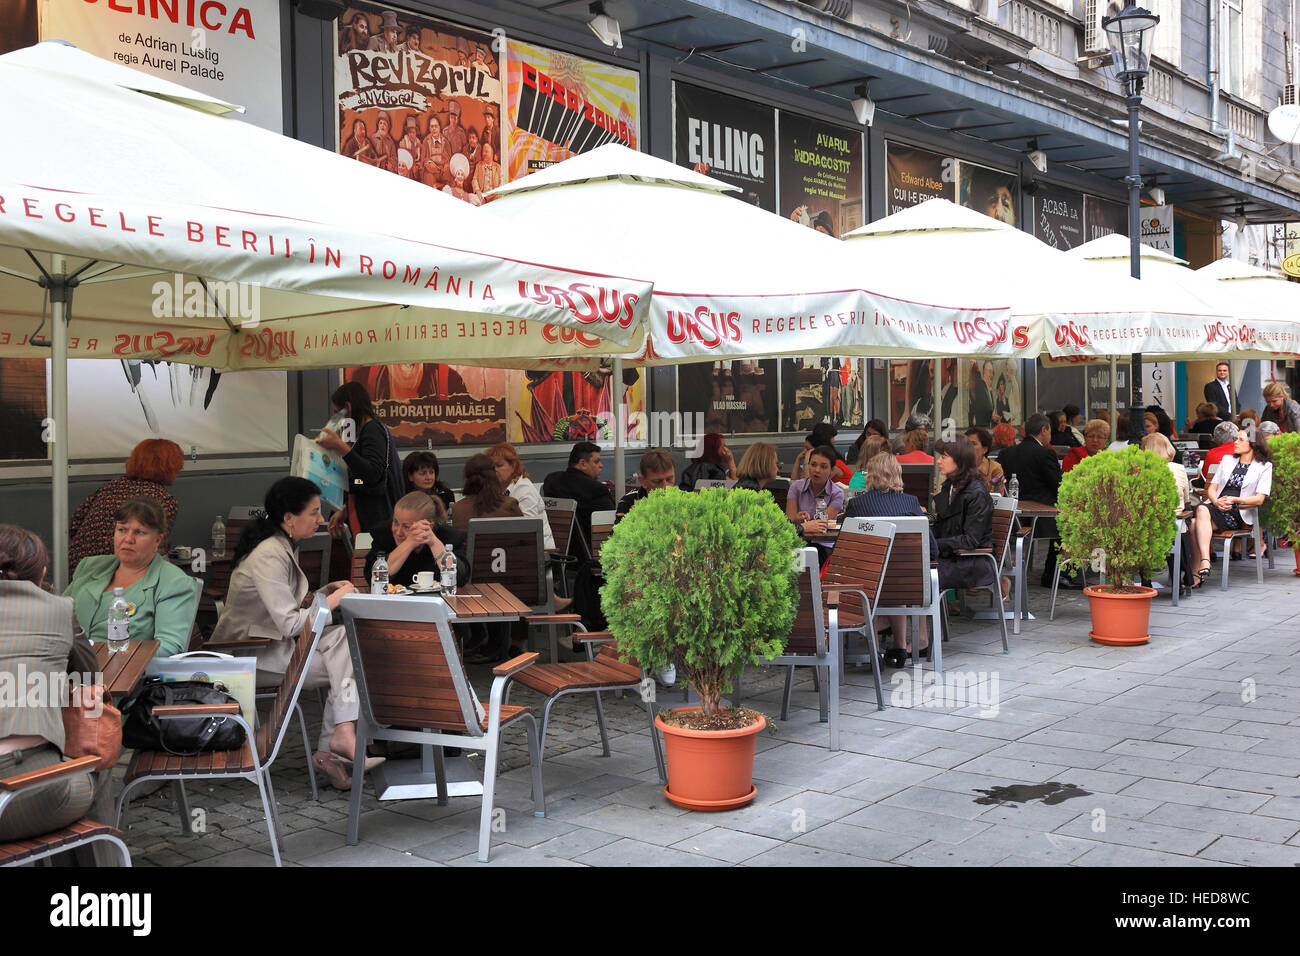 Rumänien, Bukarest, Zentrum, Straßenszene in der historischen Altstadt, Straßencafes und Restaurants Stock Photo